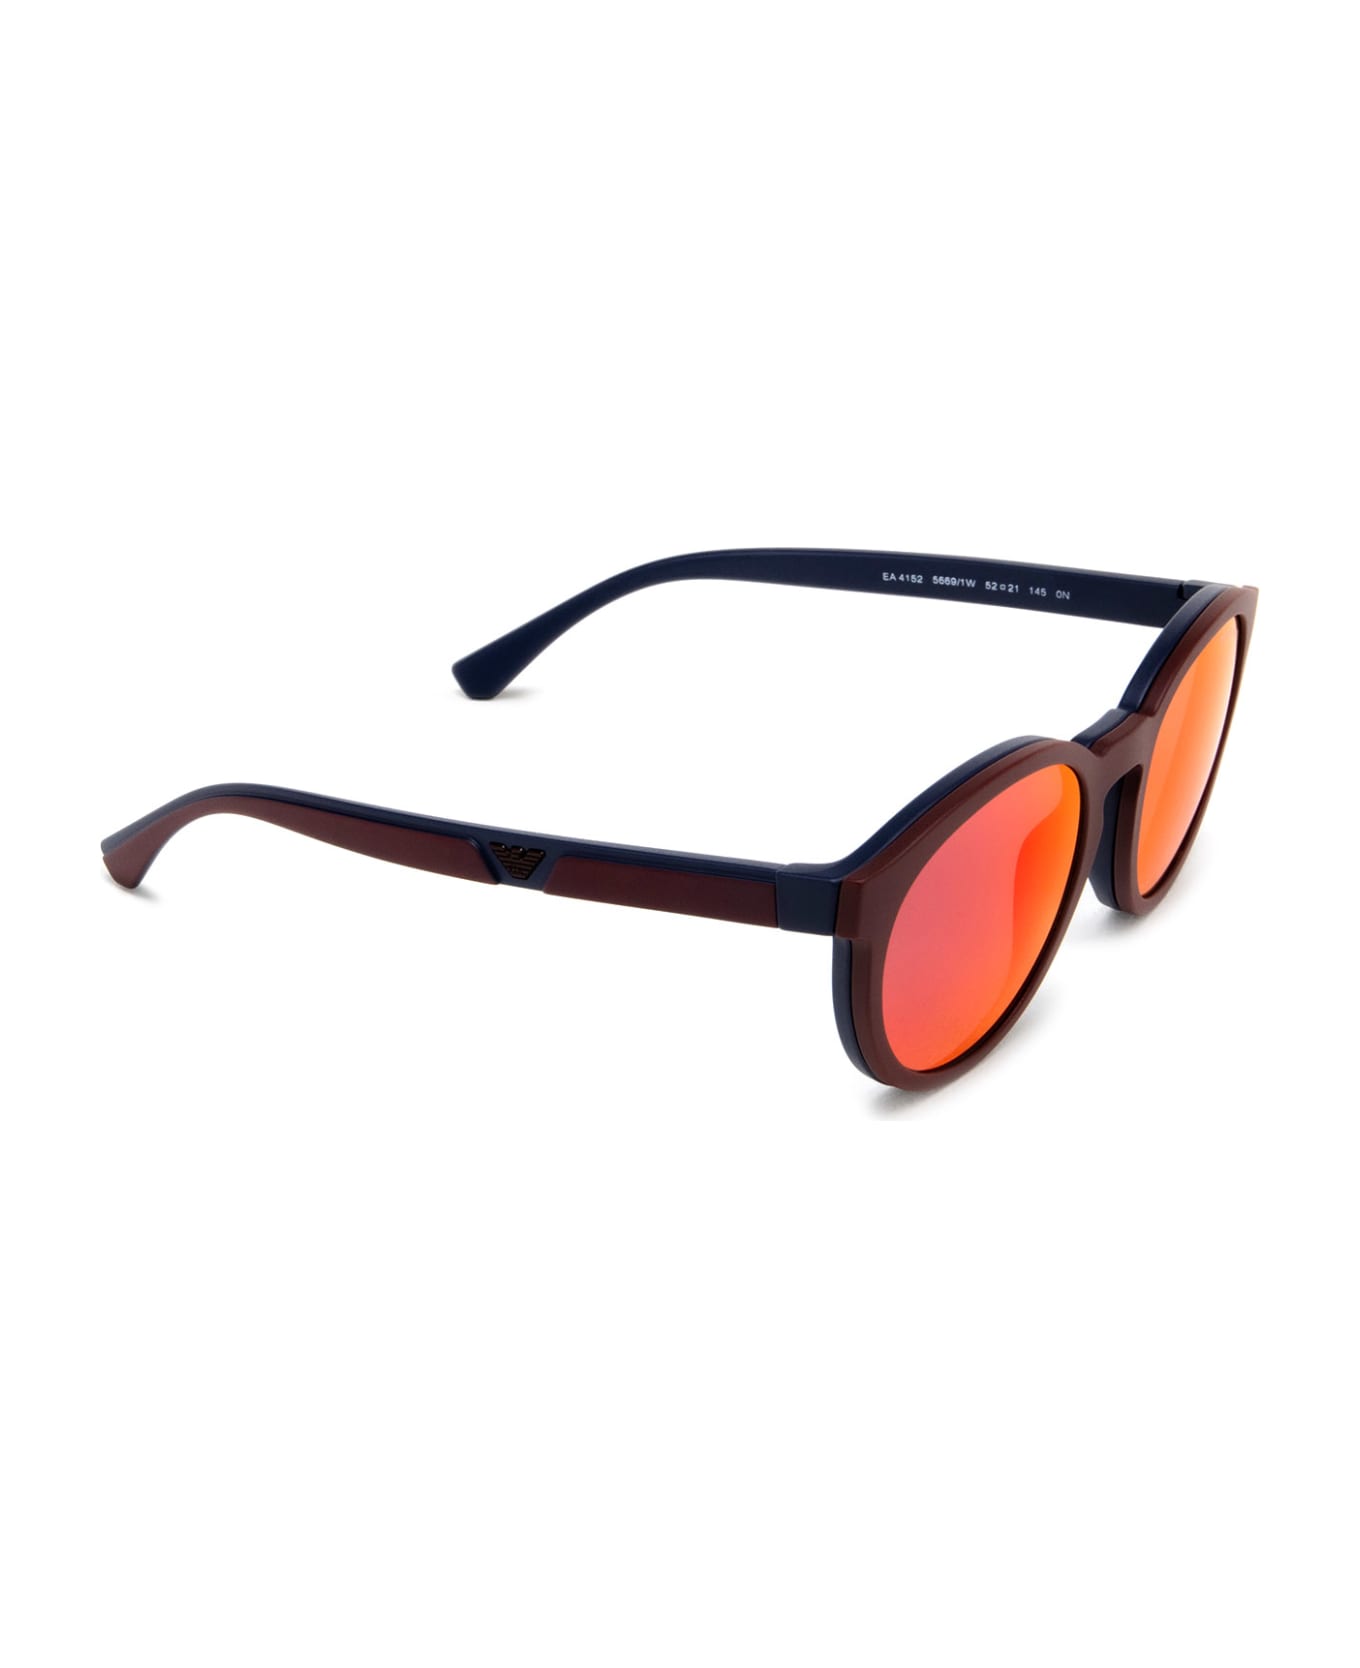 Emporio Armani Ea4152 Matte Blue Sunglasses - Matte Blue